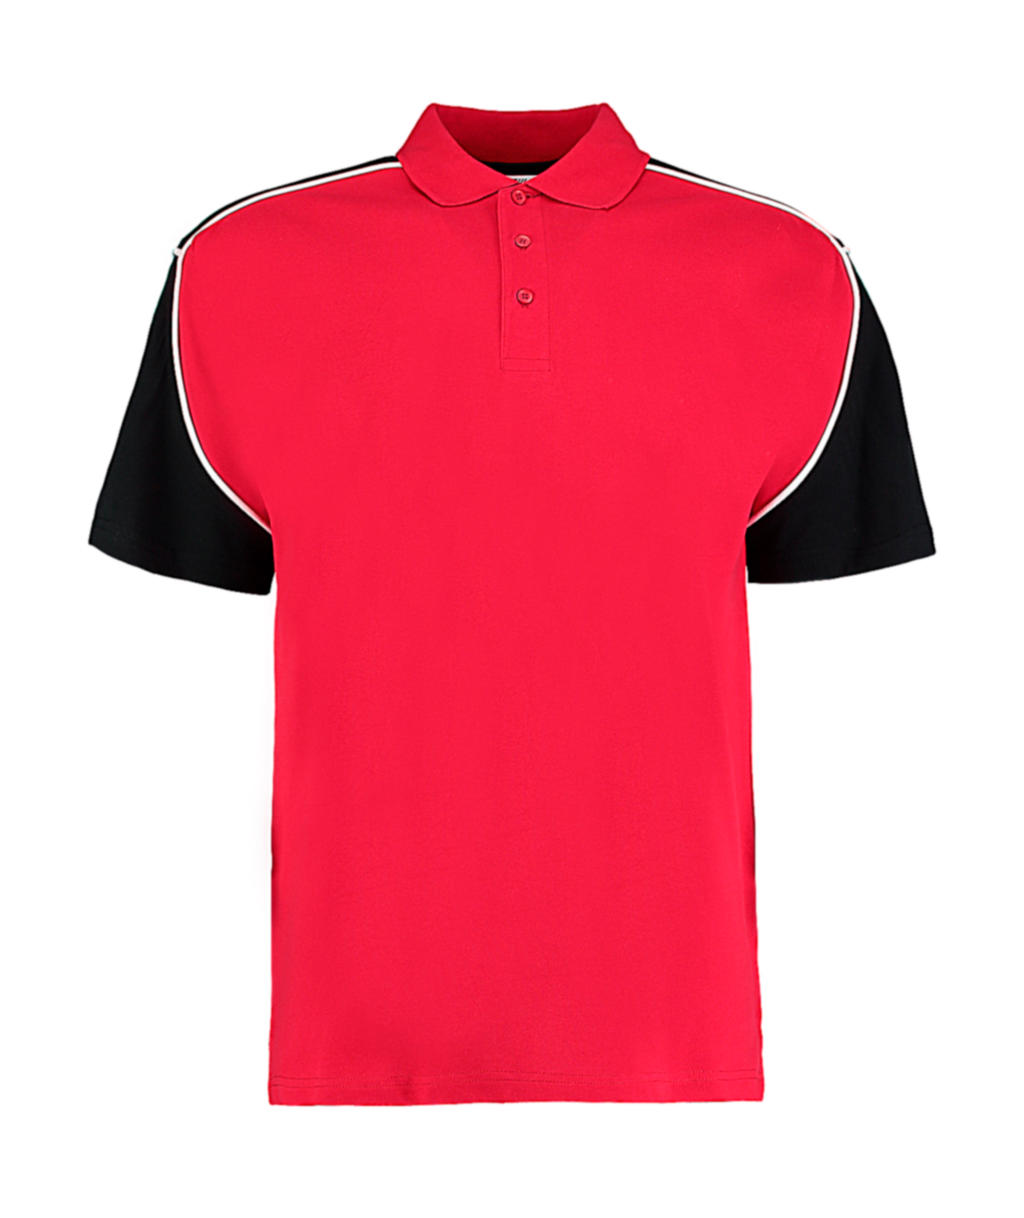  Classic Fit Monaco Polo  in Farbe Red/Black/White